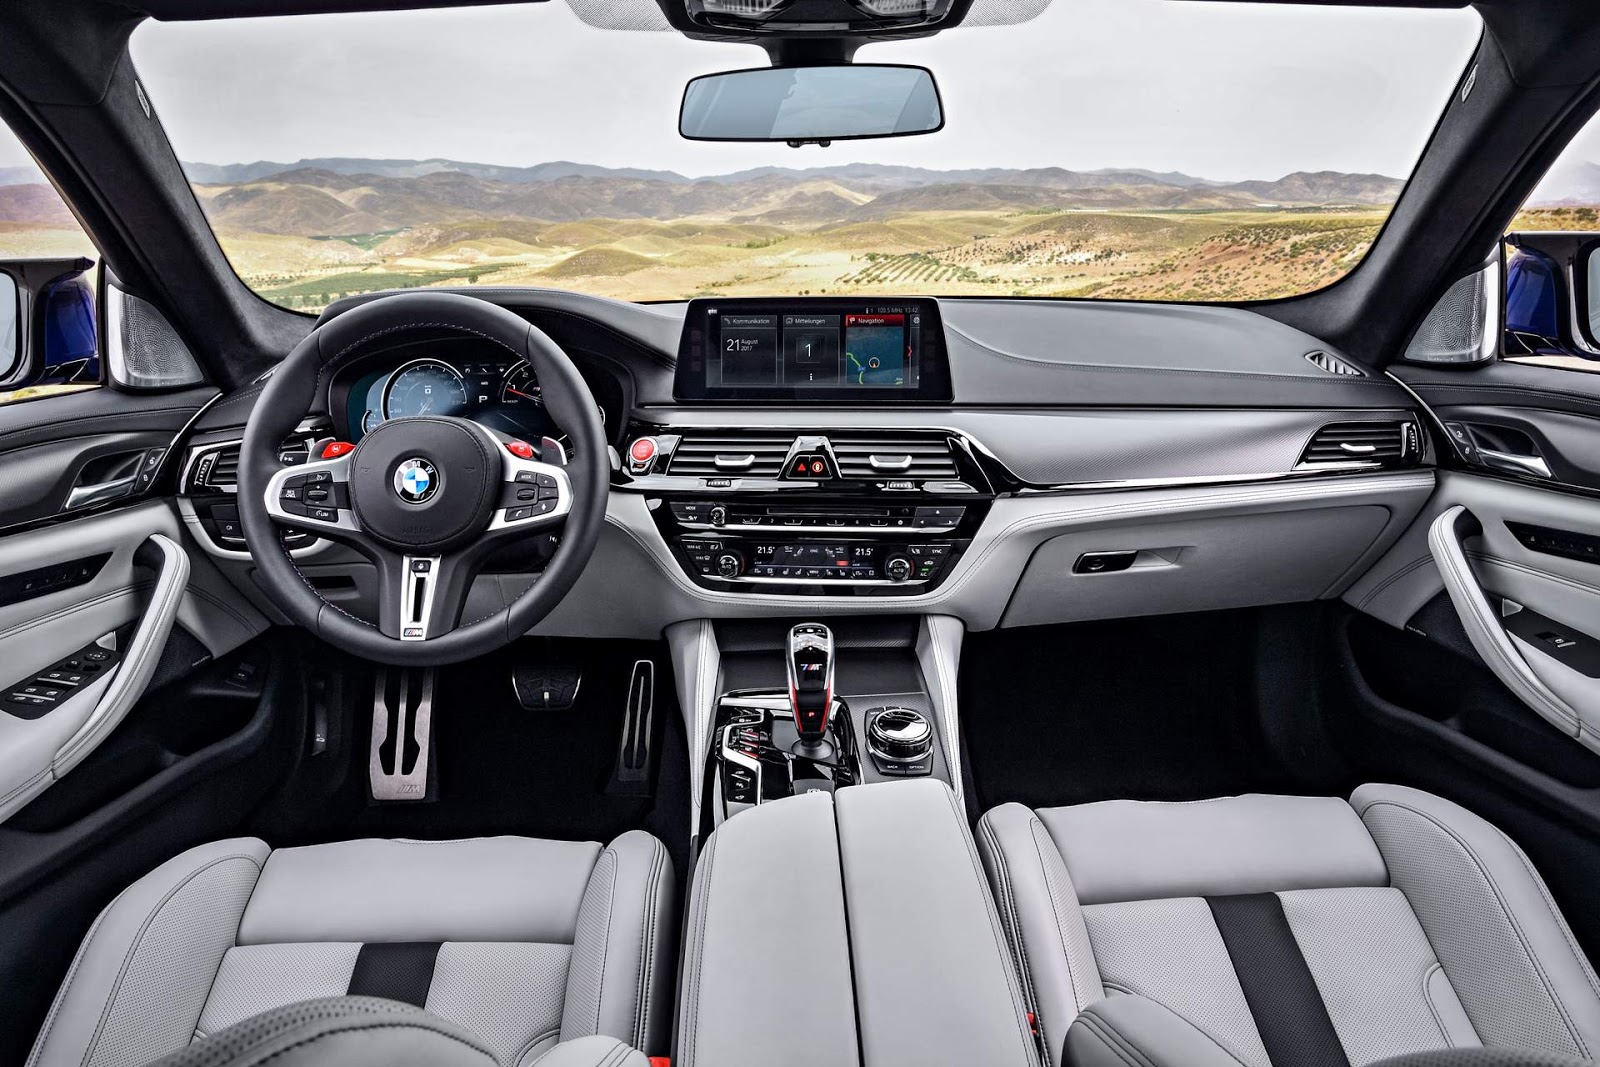 BMW M5 2018 xDrive: detalhes e especificações - vídeo